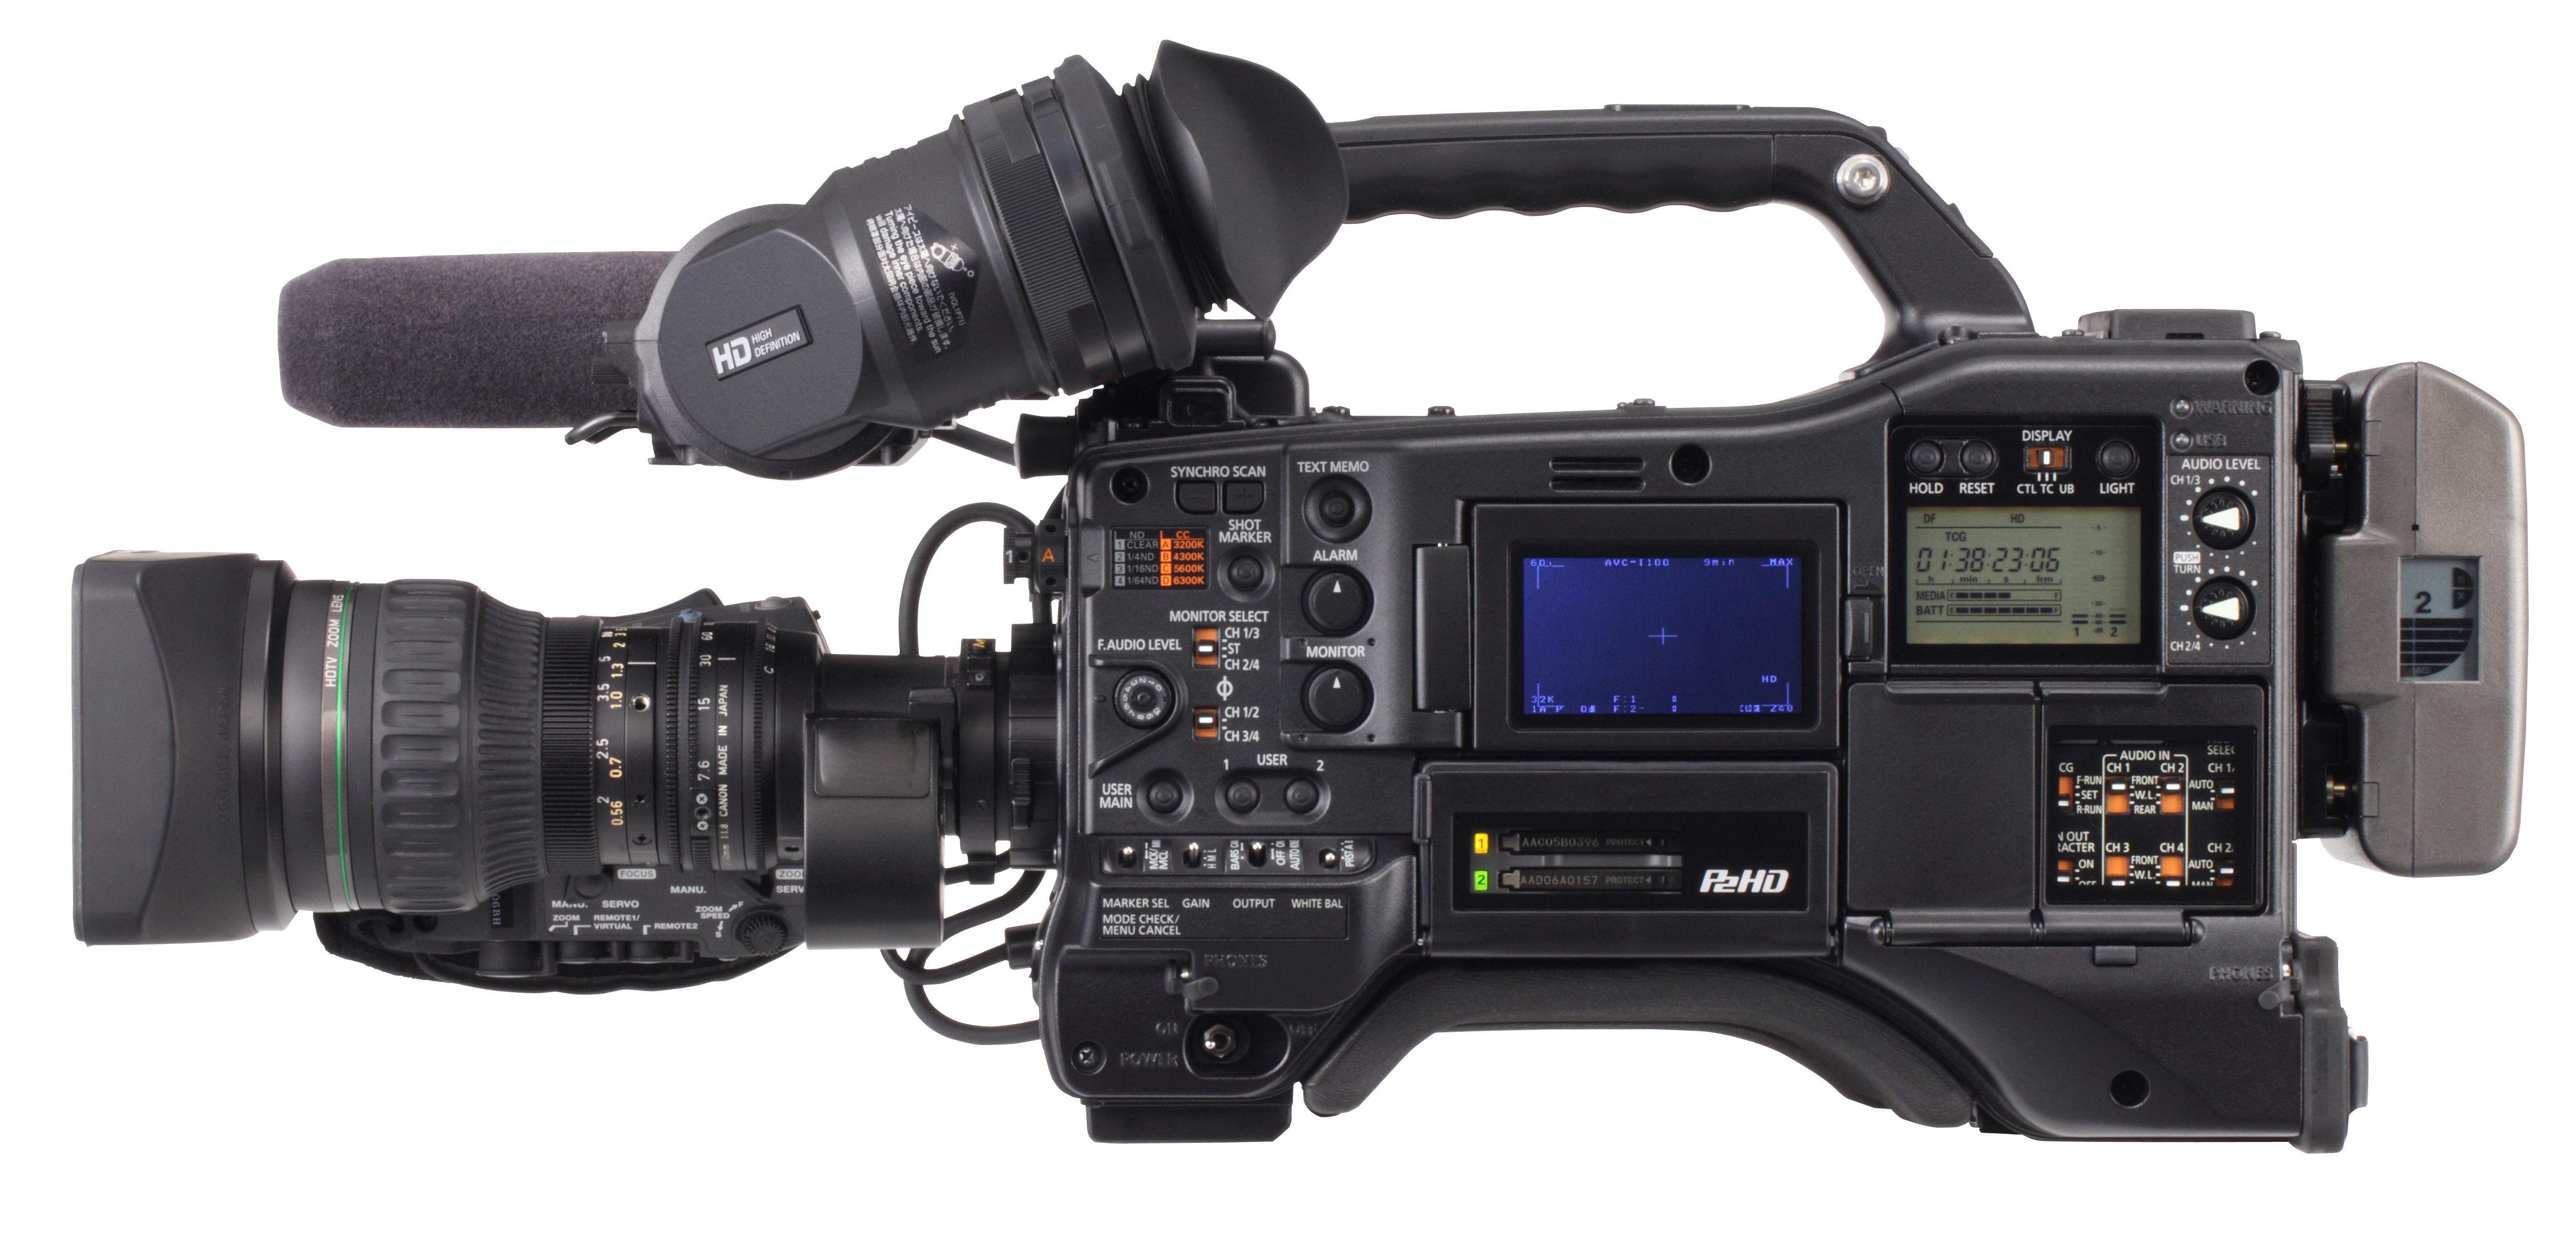 AJ-HPX3100   Videocamara Panasonic   accesorios y repuestos